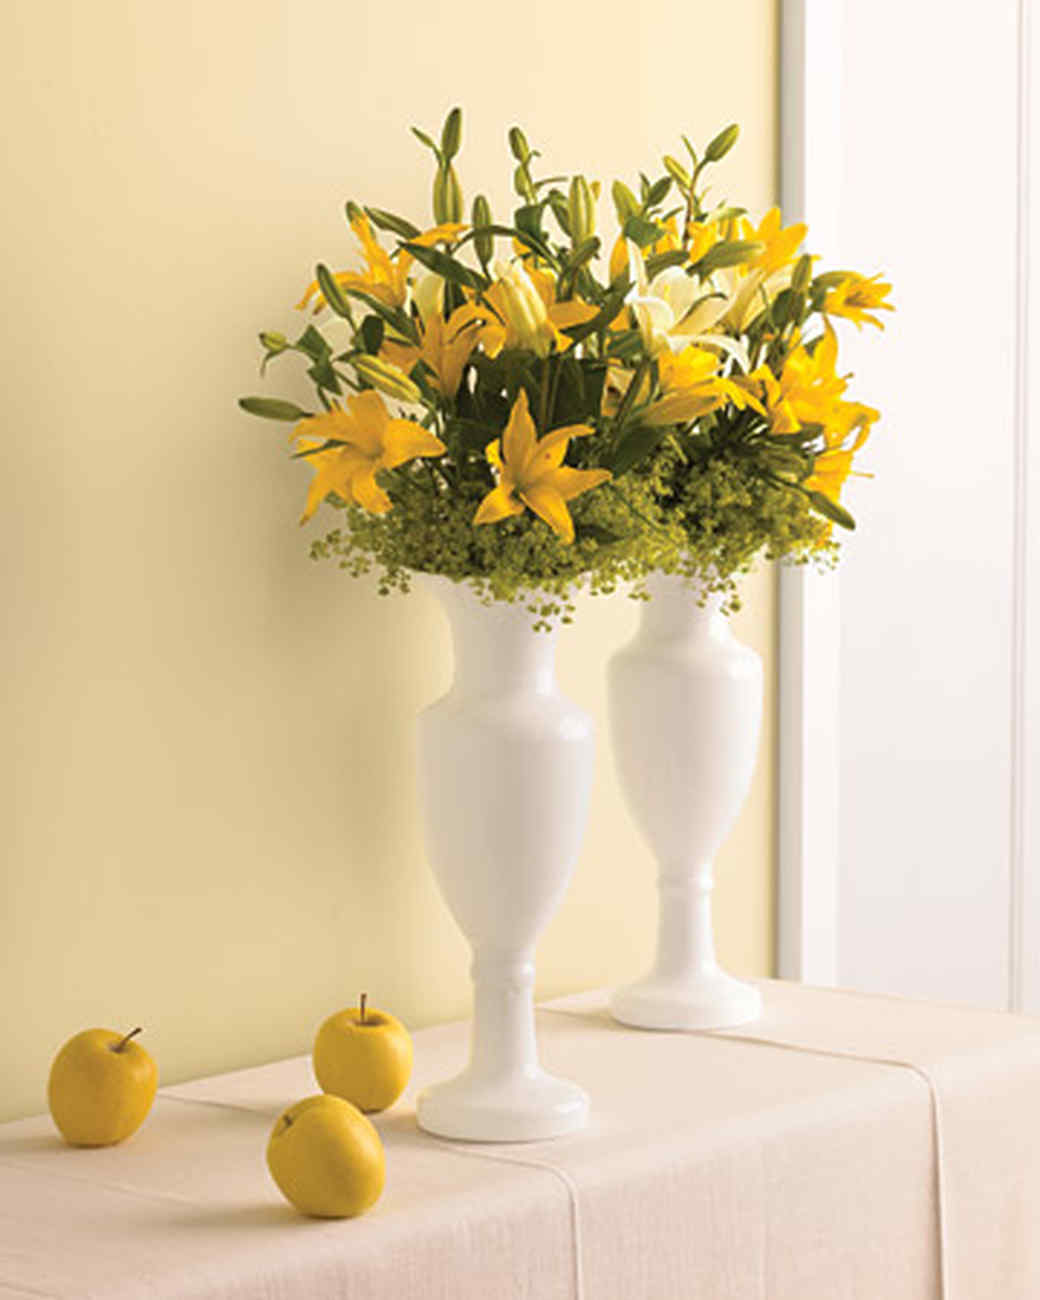 floral arrangement ideas | martha stewart